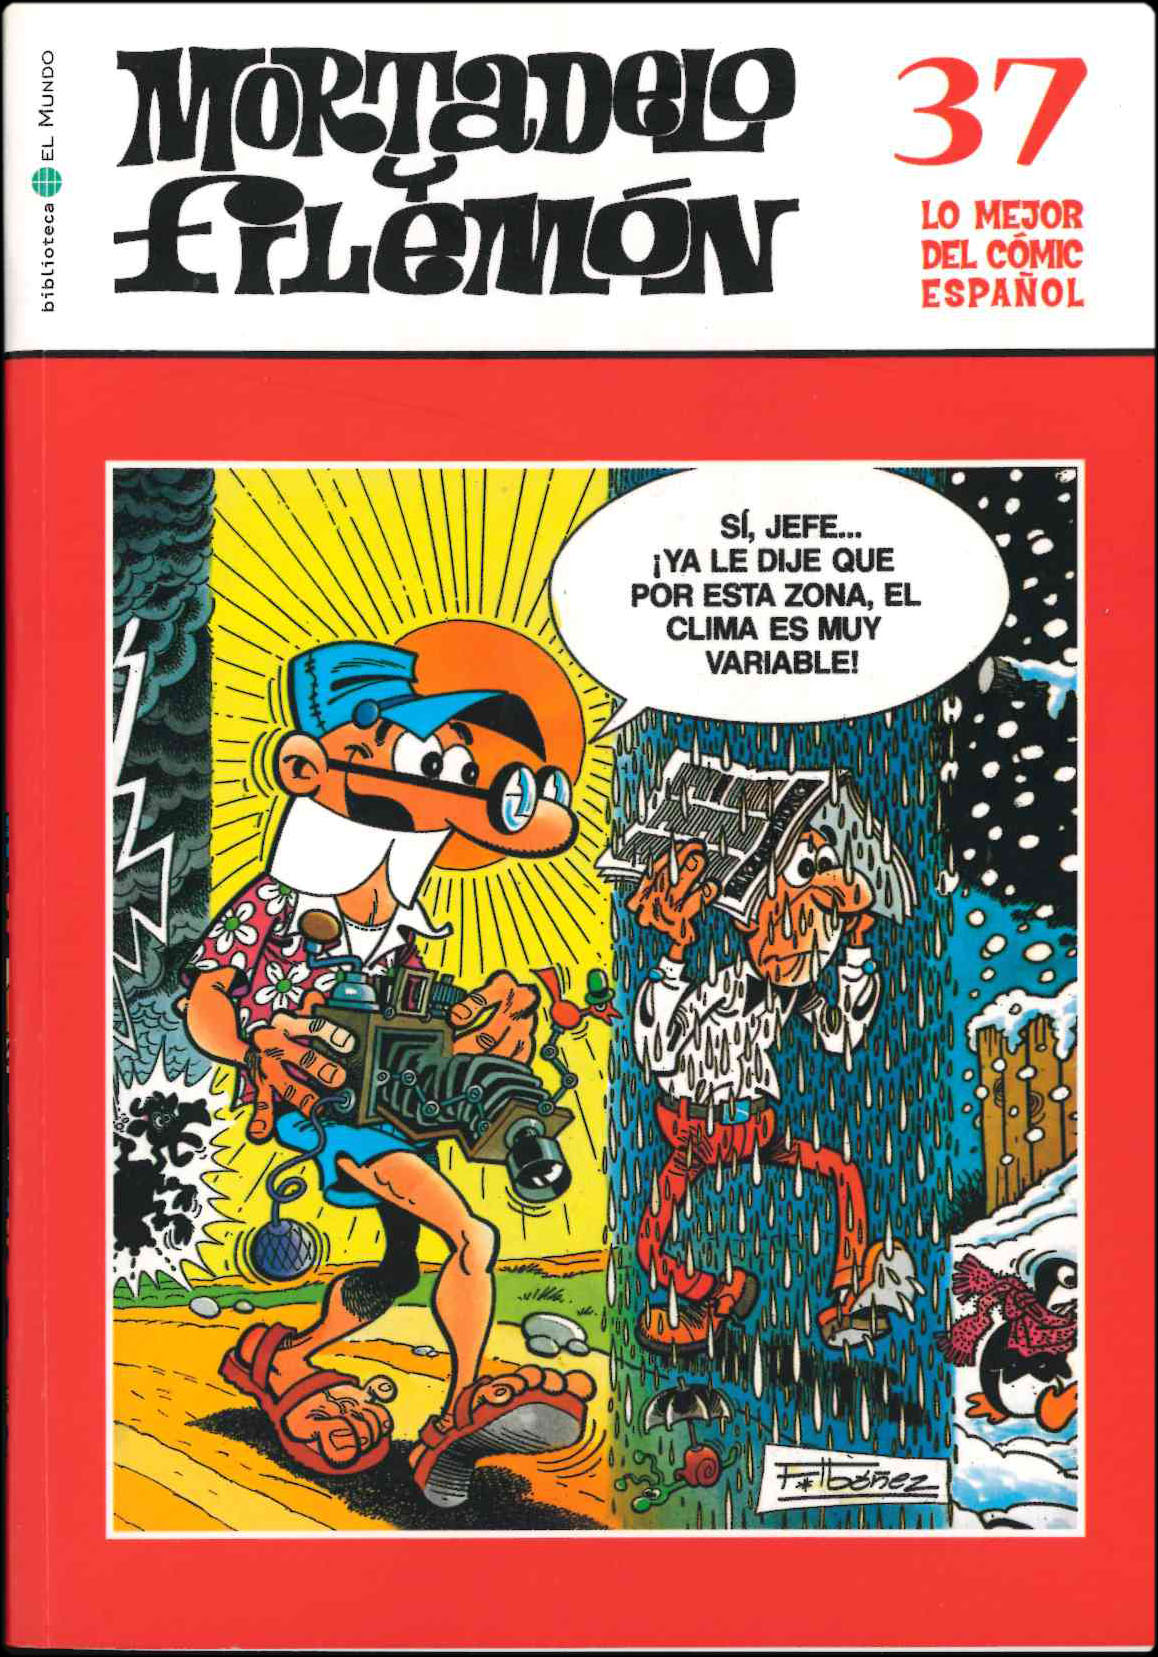 Lo mejor del Cómic Español. Grupo Zeta: El Mundo / Ediciones B 2006. Nº 37. Mortadelo y Filemón